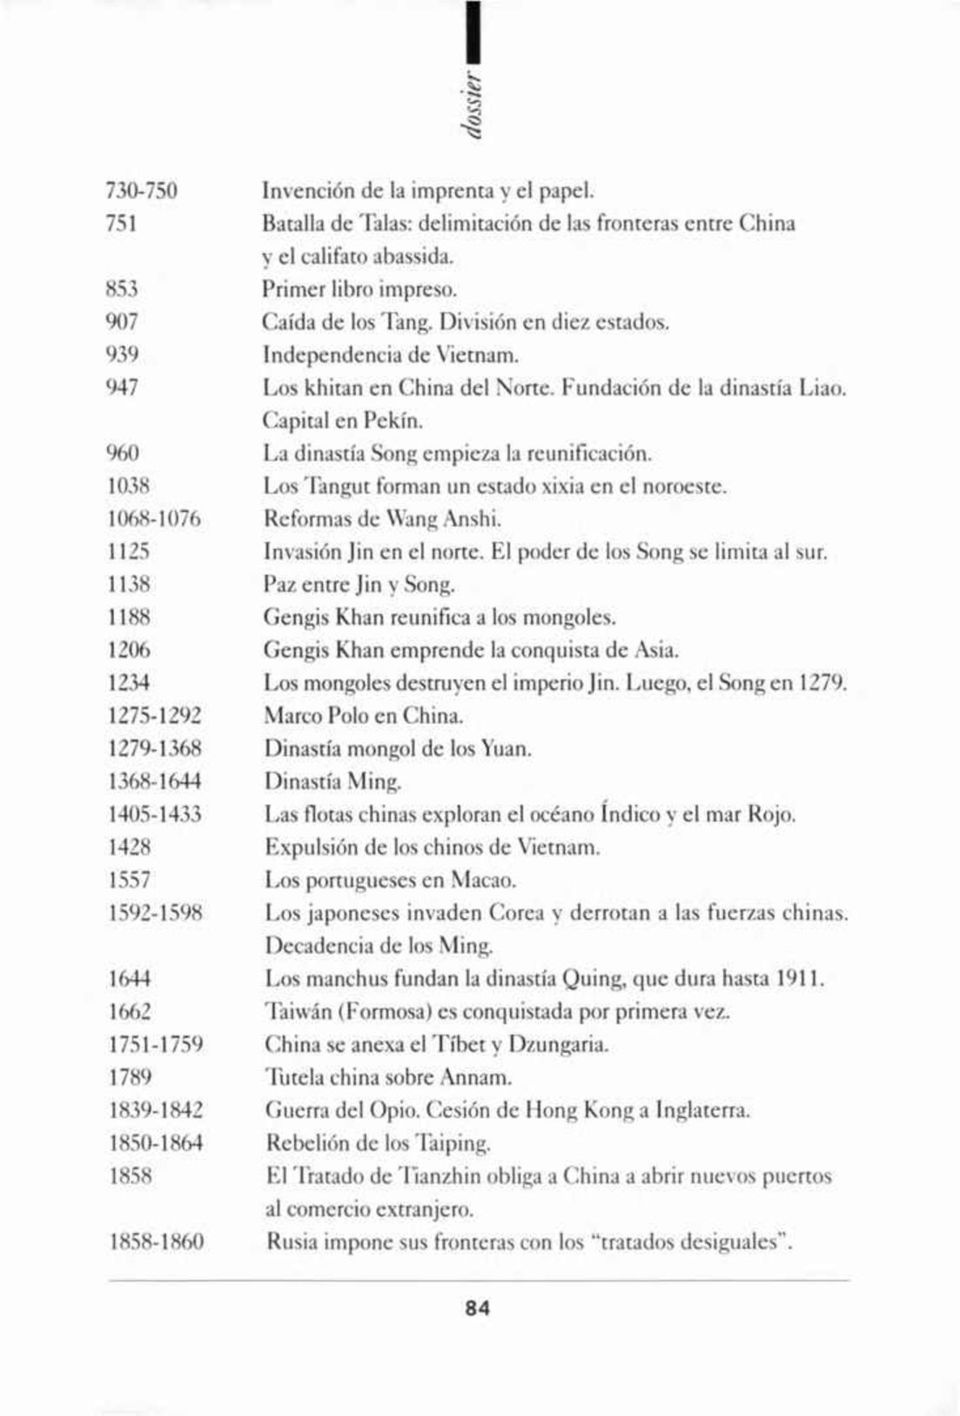 1038 Los Tangut forman un estado xixia en el noroeste. 1068-1076 Reformas de Wang Anshi. 1125 Invasión Jin en el norte. El poder de los Song se limita al sur. 1138 Paz entre Jin y Song.